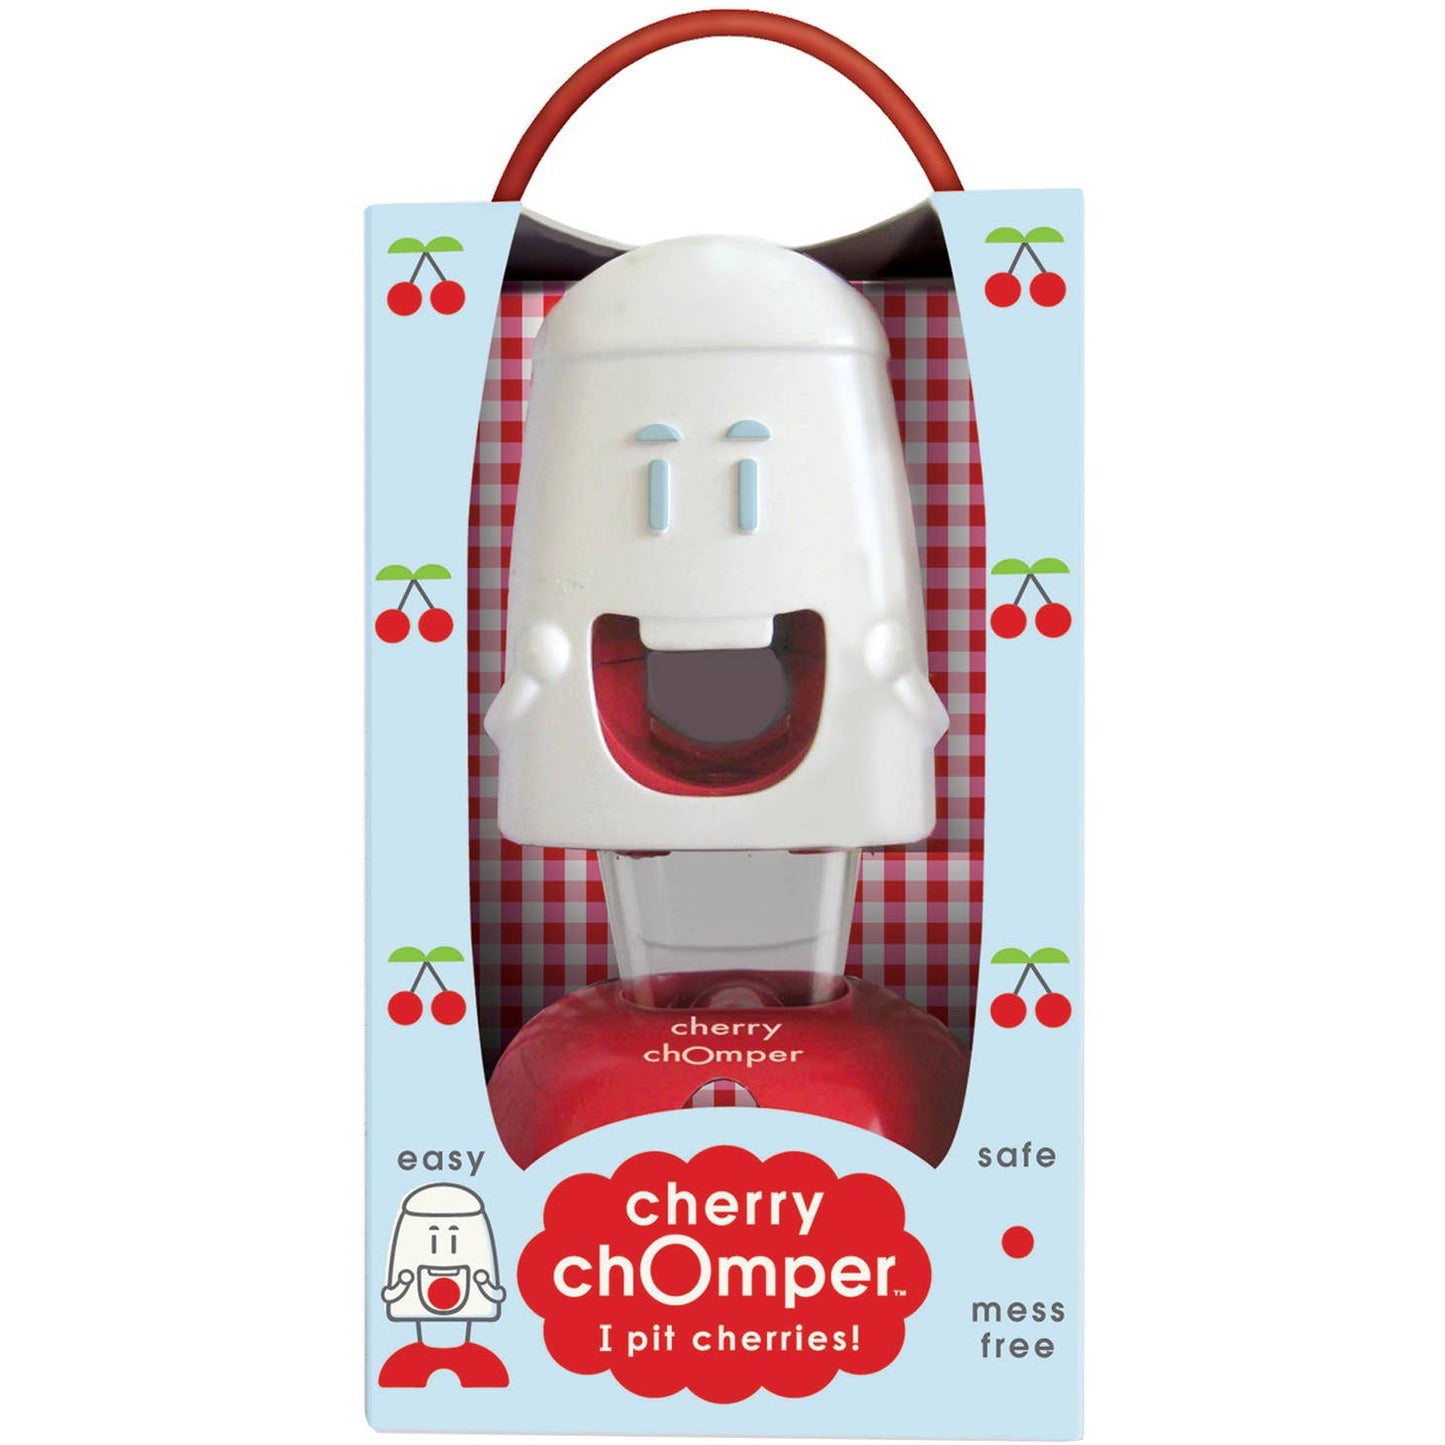 Cherry Chomper Cherry Pitter